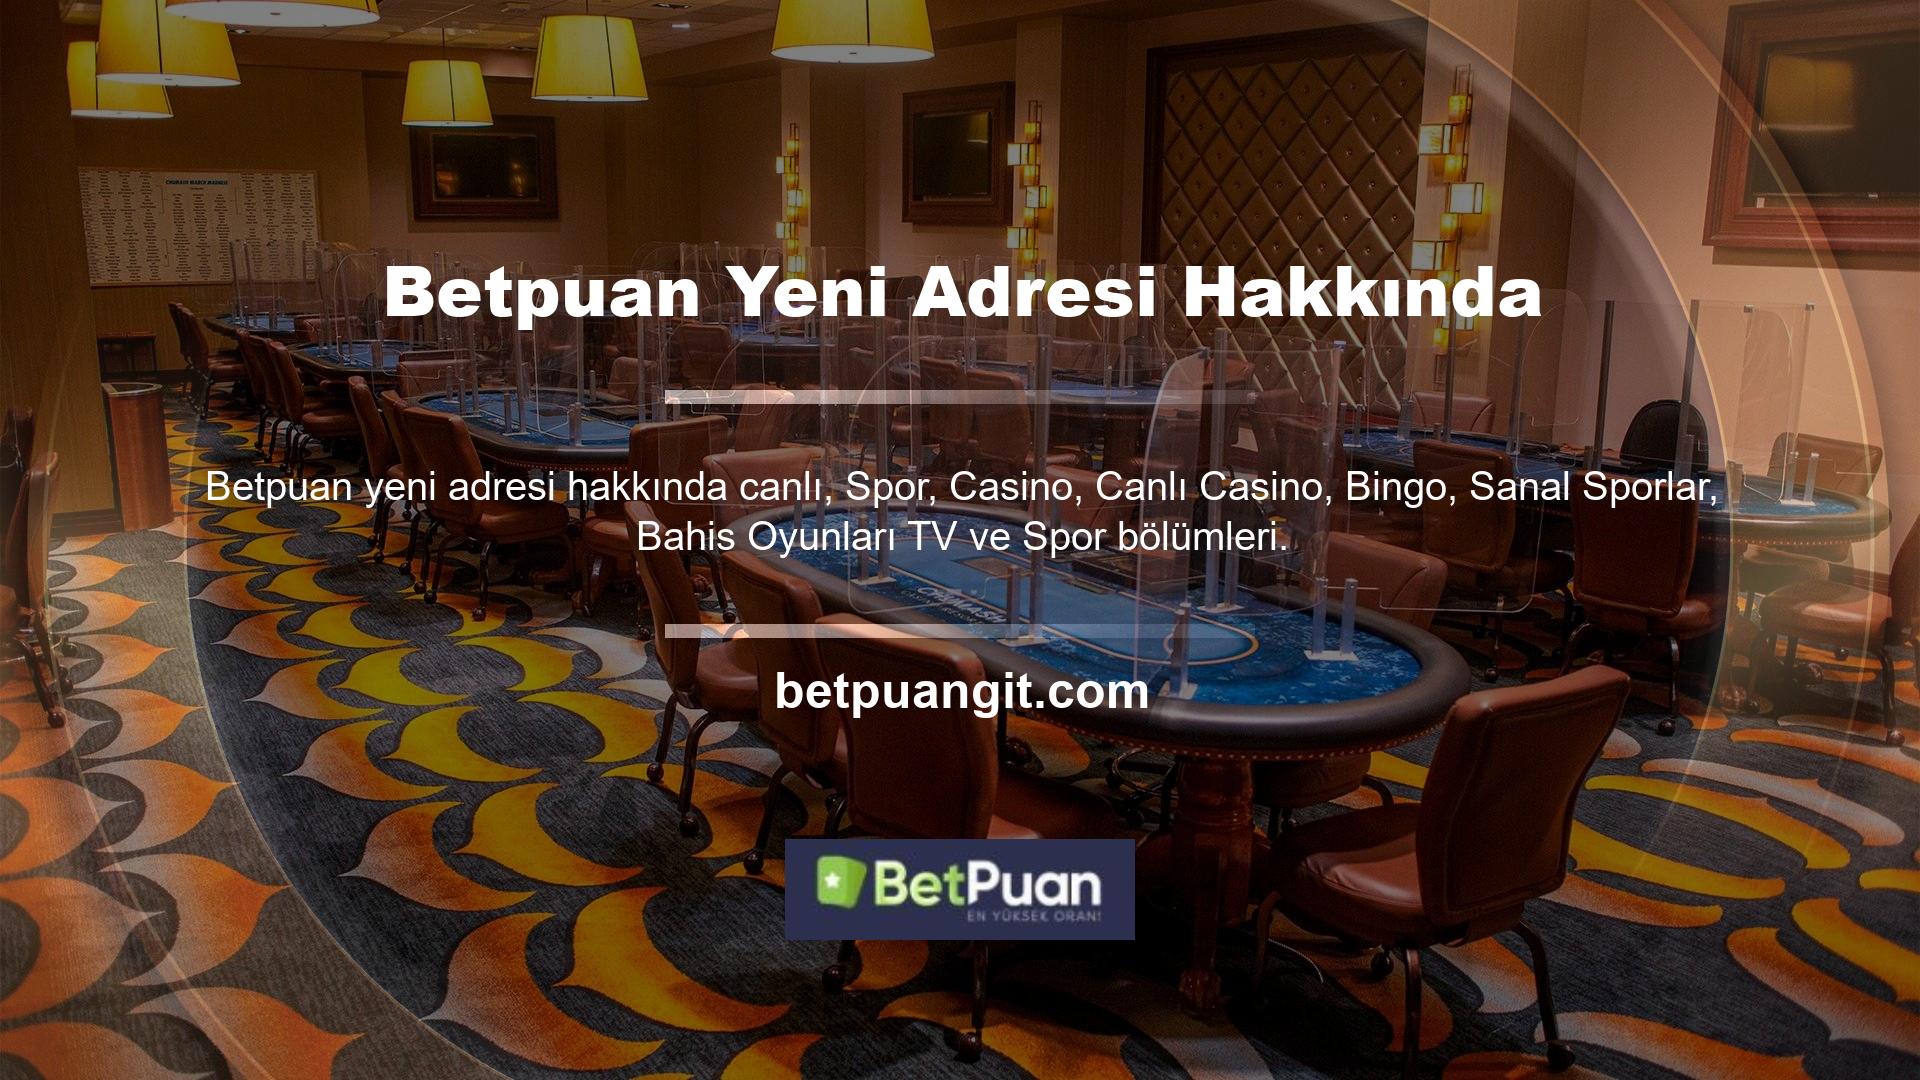 Sitede ayrıca maçları canlı olarak izleyebileceğiniz Betpuan adında yeni bir adres bölümü de bulunuyor